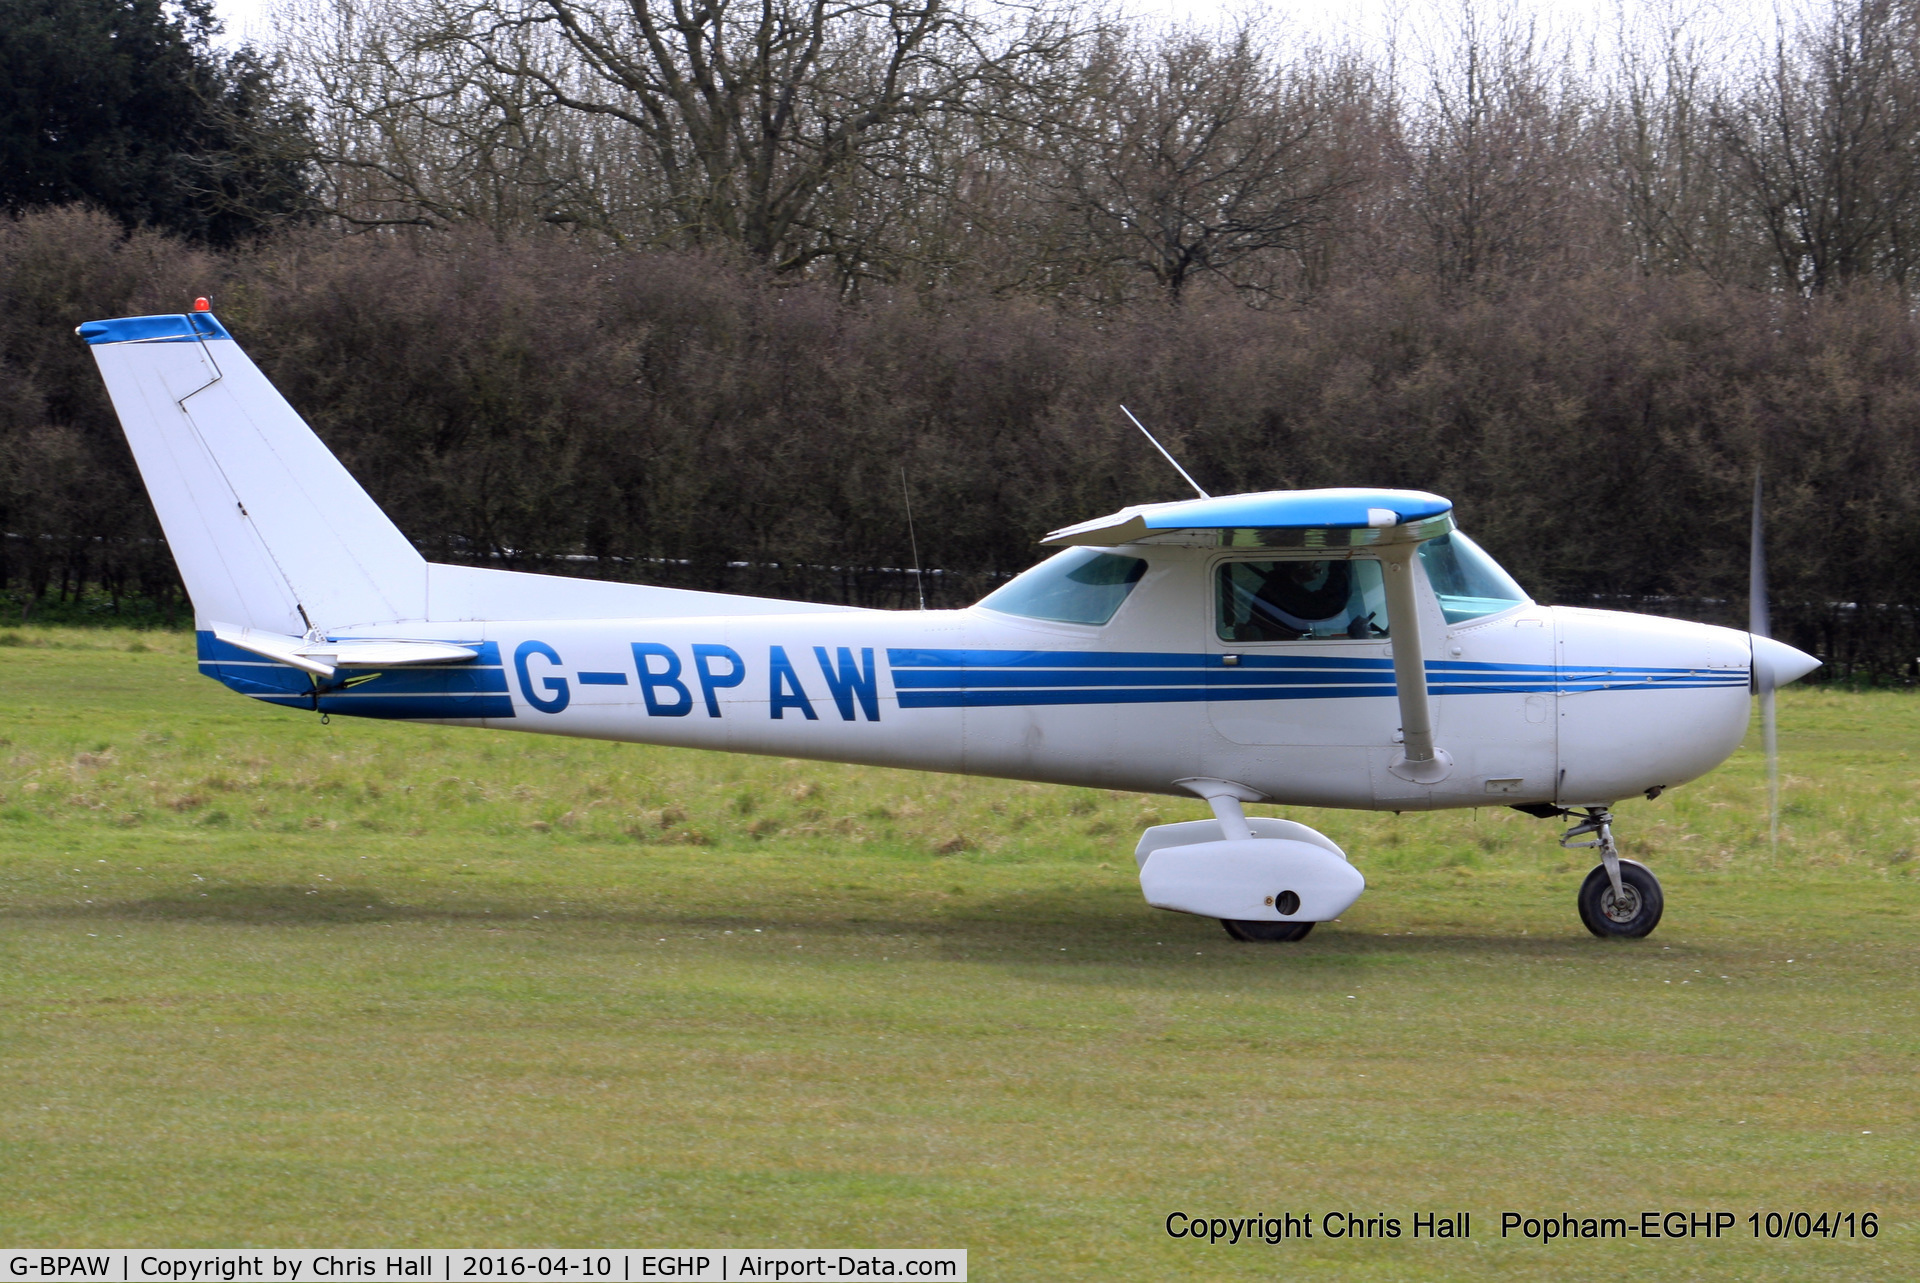 G-BPAW, 1976 Cessna 150M C/N 150-77923, at Popham